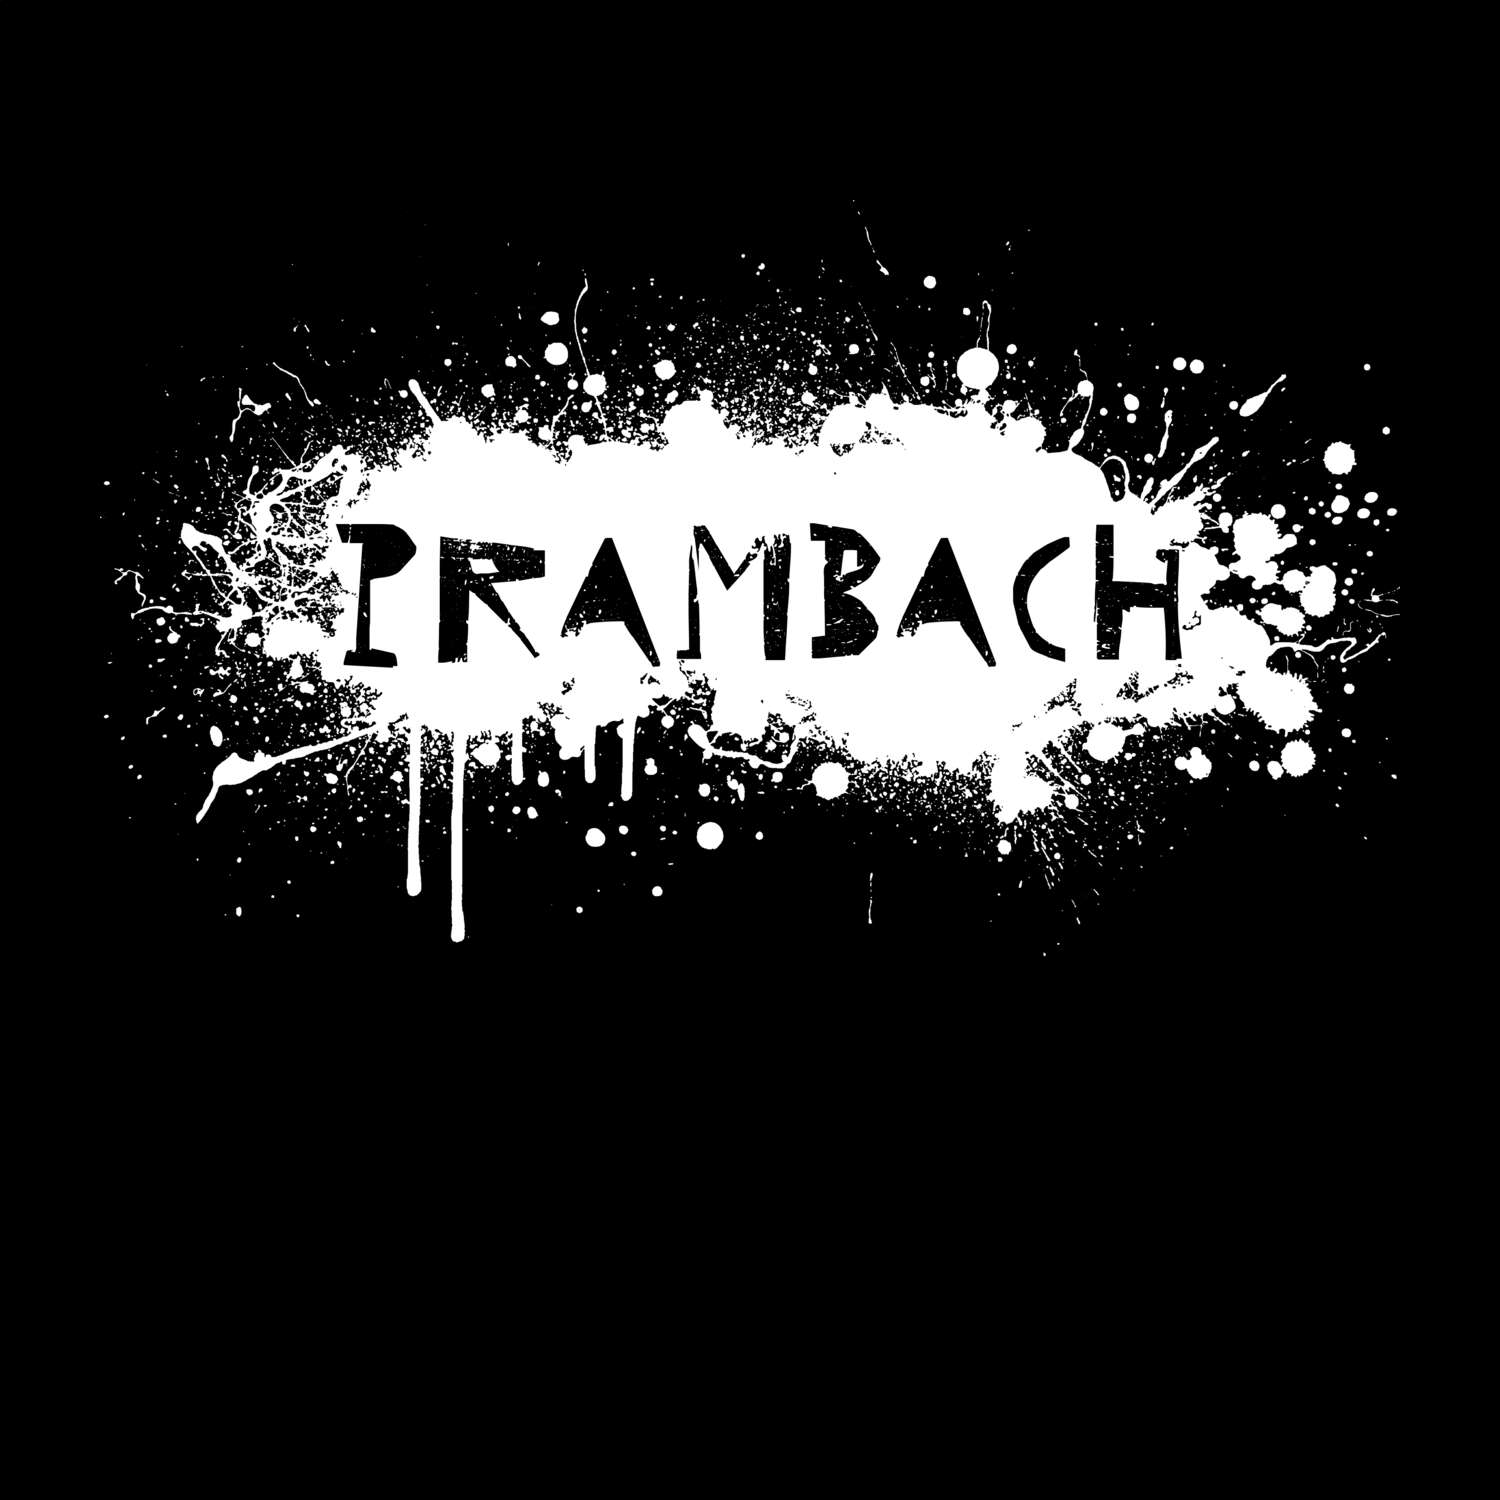 Prambach T-Shirt »Paint Splash Punk«